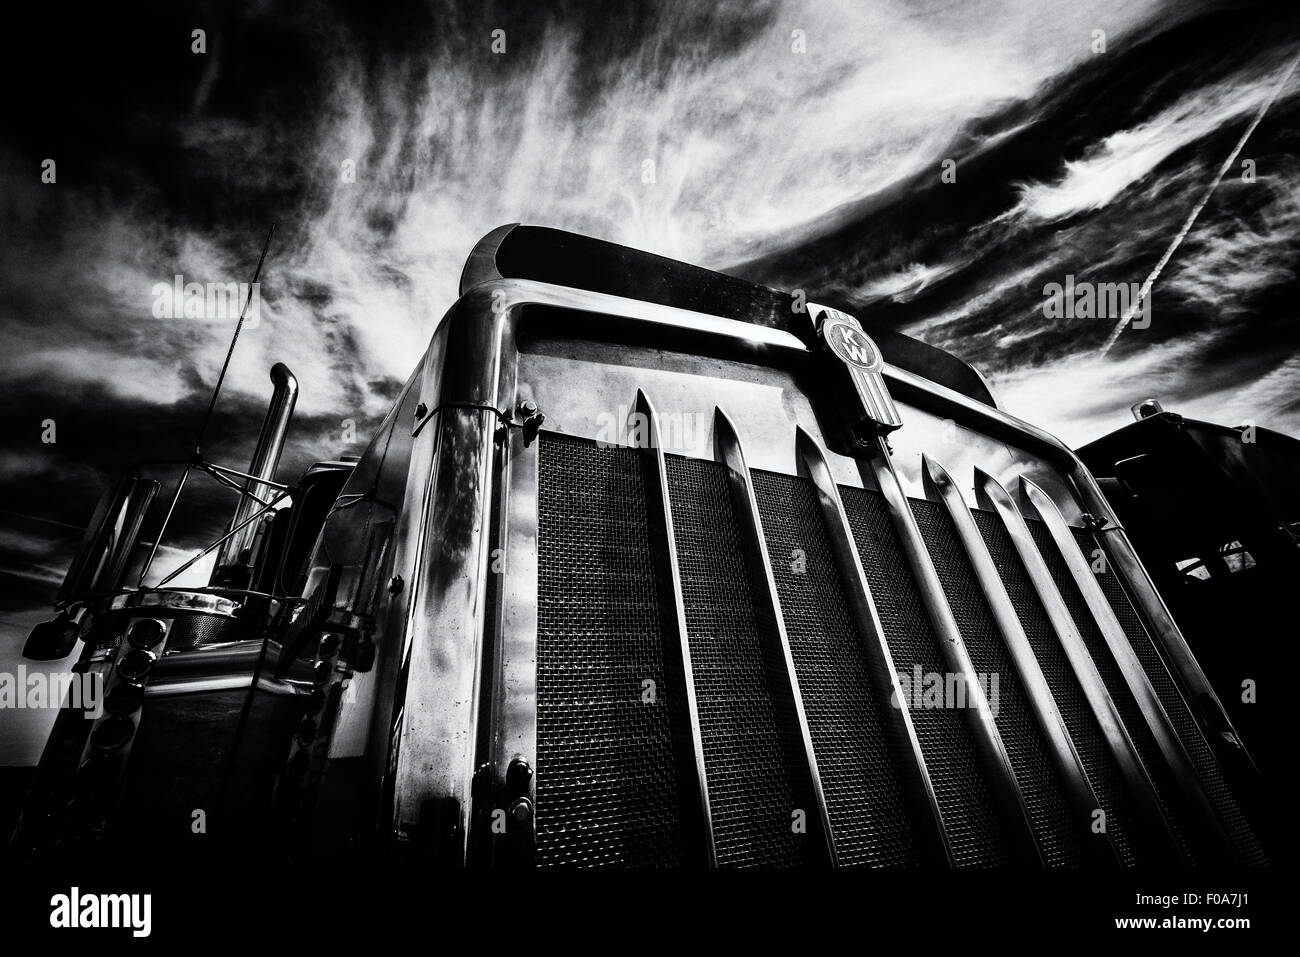 Camiones estadounidenses de fotografías tomadas en un reciente evento en Cirencester tomadas en blanco y negro para dar una imagen más potente Foto de stock